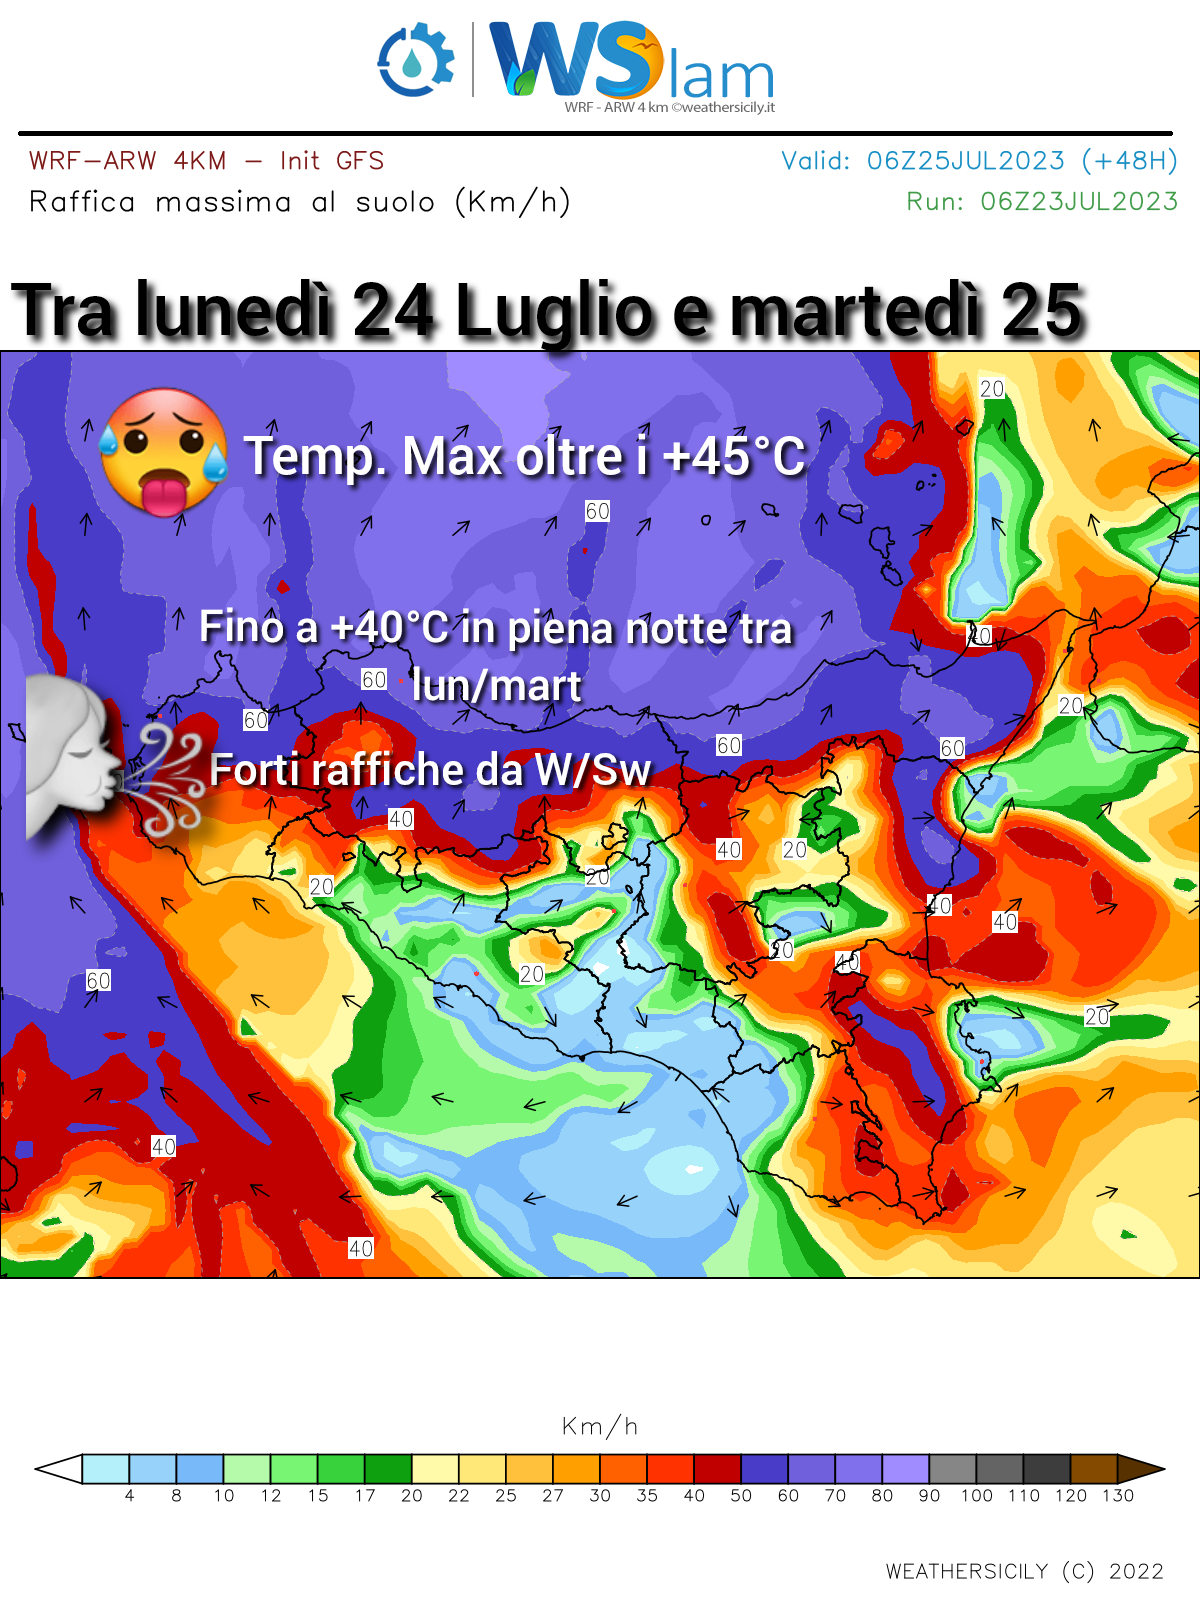 Meteo Palermo: libeccio infuocato tra lunedì e martedì! Attese temperature fino a +40°C in piena notte e oltre +45°C di giorno.